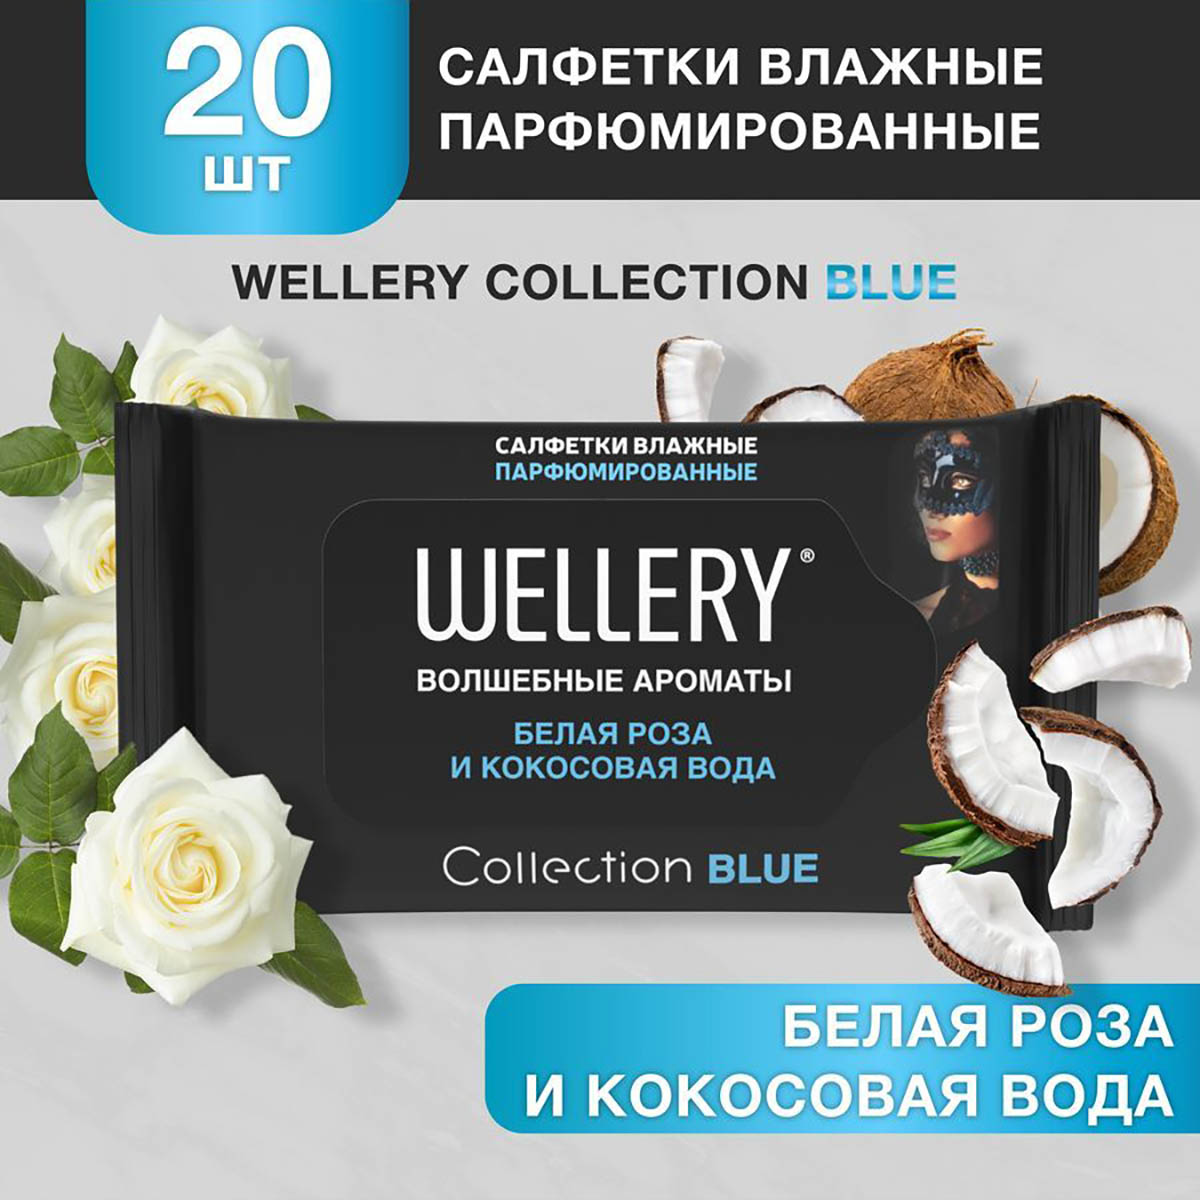 Салфетки влажные Wellery Collection Blue универсальные, белая роза, кокосовая вода 20 шт семена ов шток роза белая 0 1 г